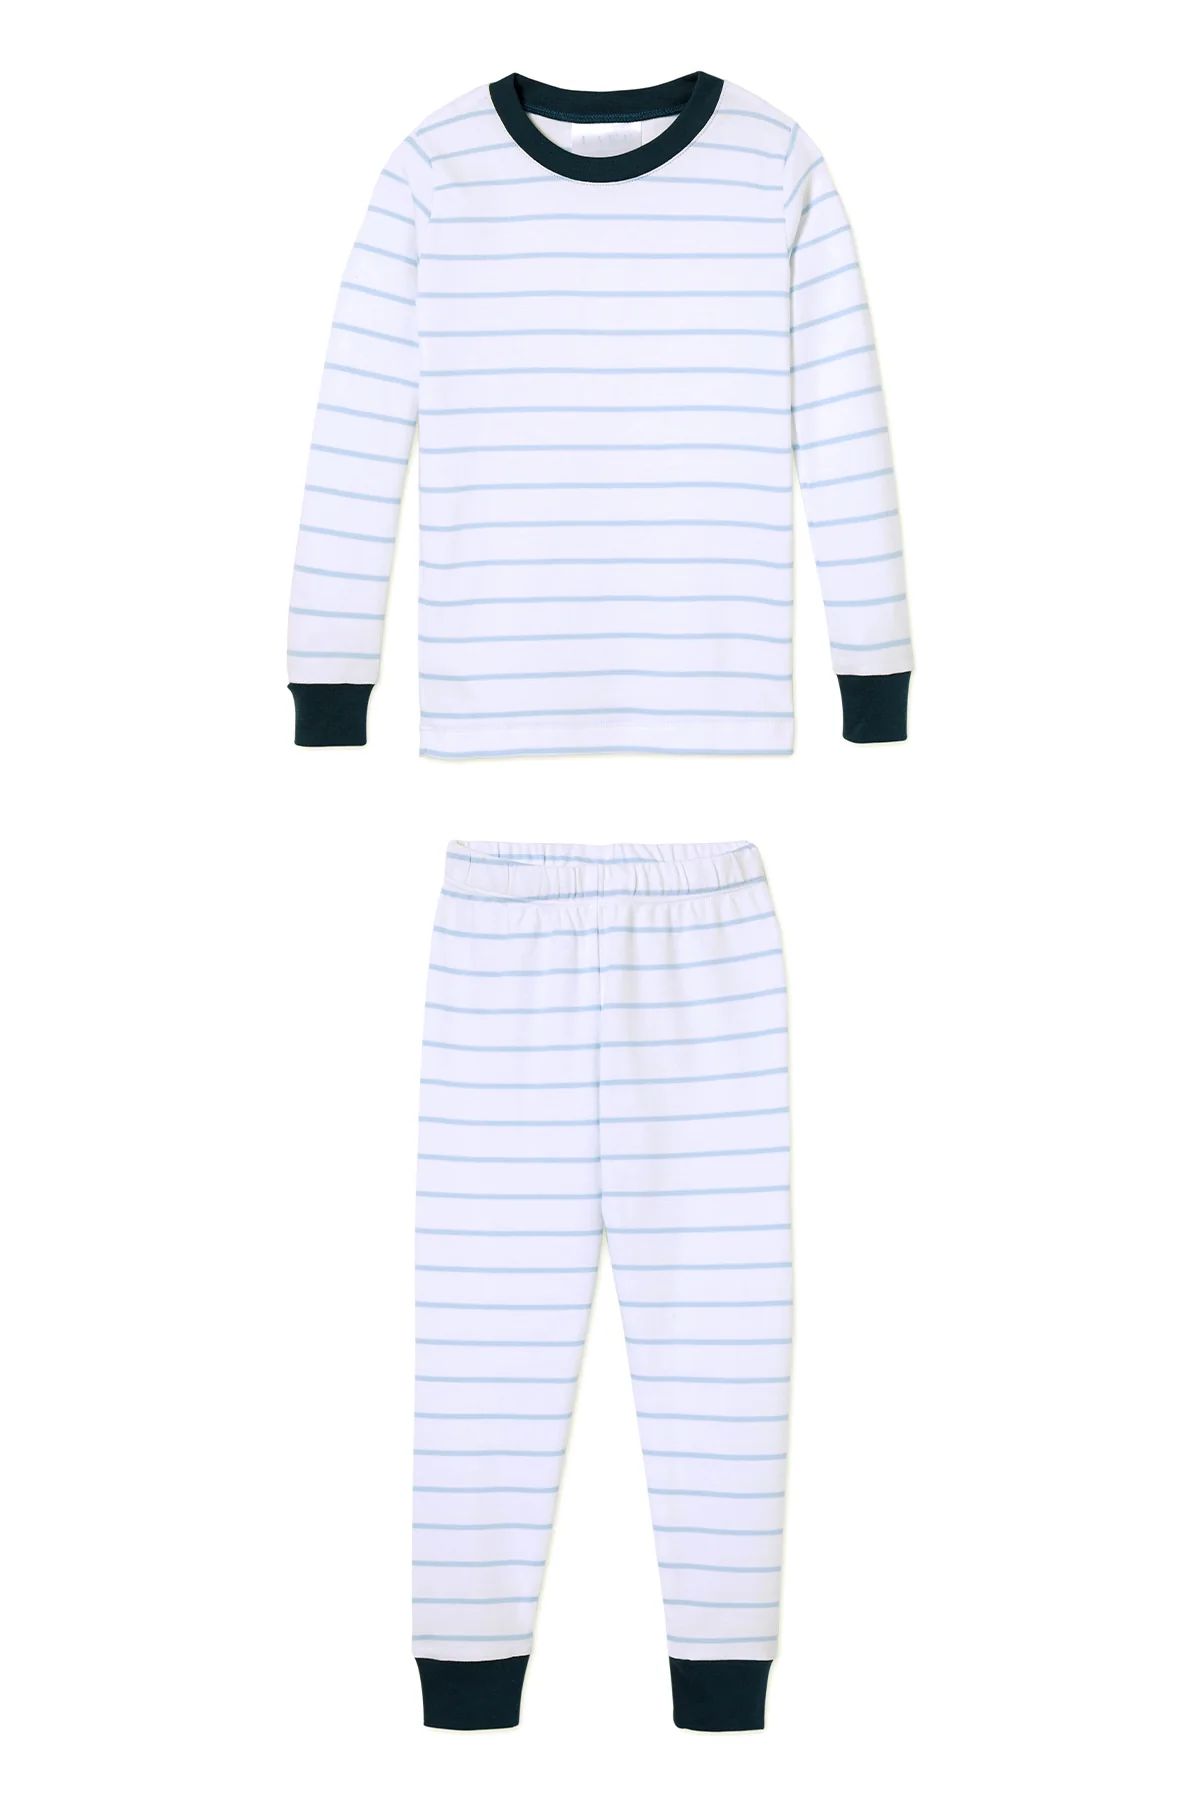 Kids Long-Long Set in Grass Stripe | Lake Pajamas